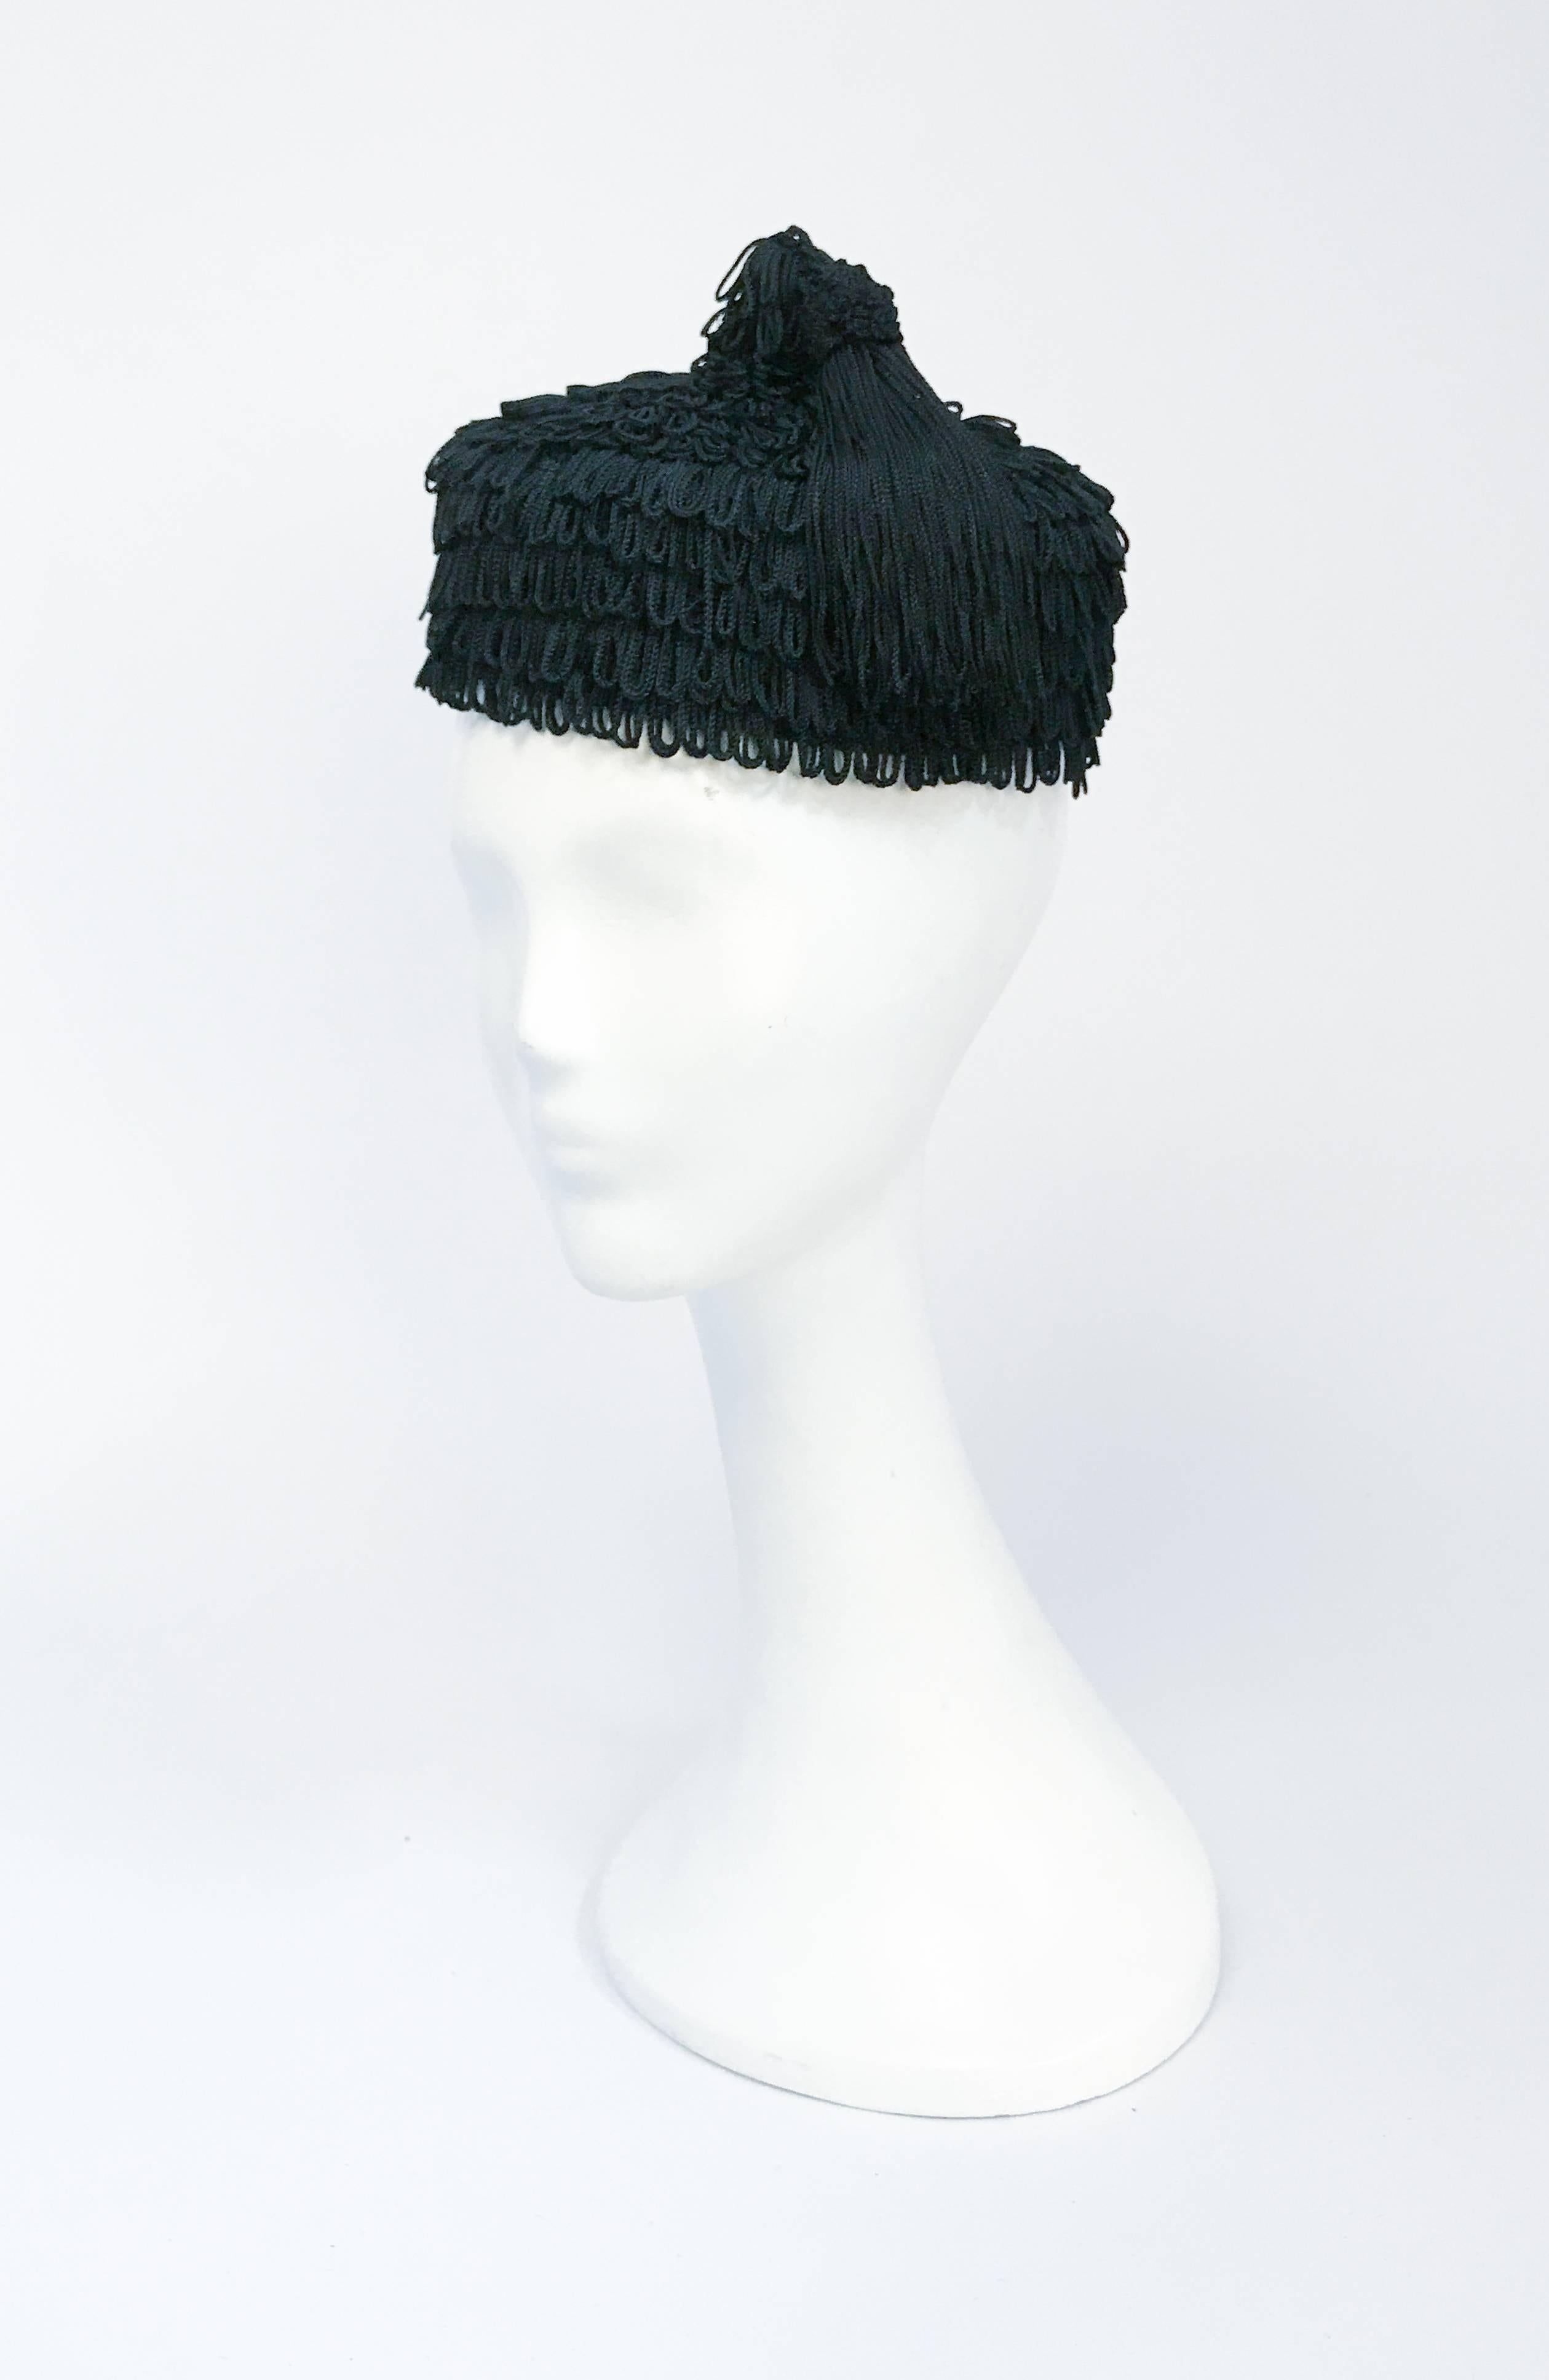 Chapeau à franges noir des années 1940 avec pompon assorti. Chapeau à franges en rayonne noire avec pompon assorti. Élastique pour fixer le chapeau sur la tête.